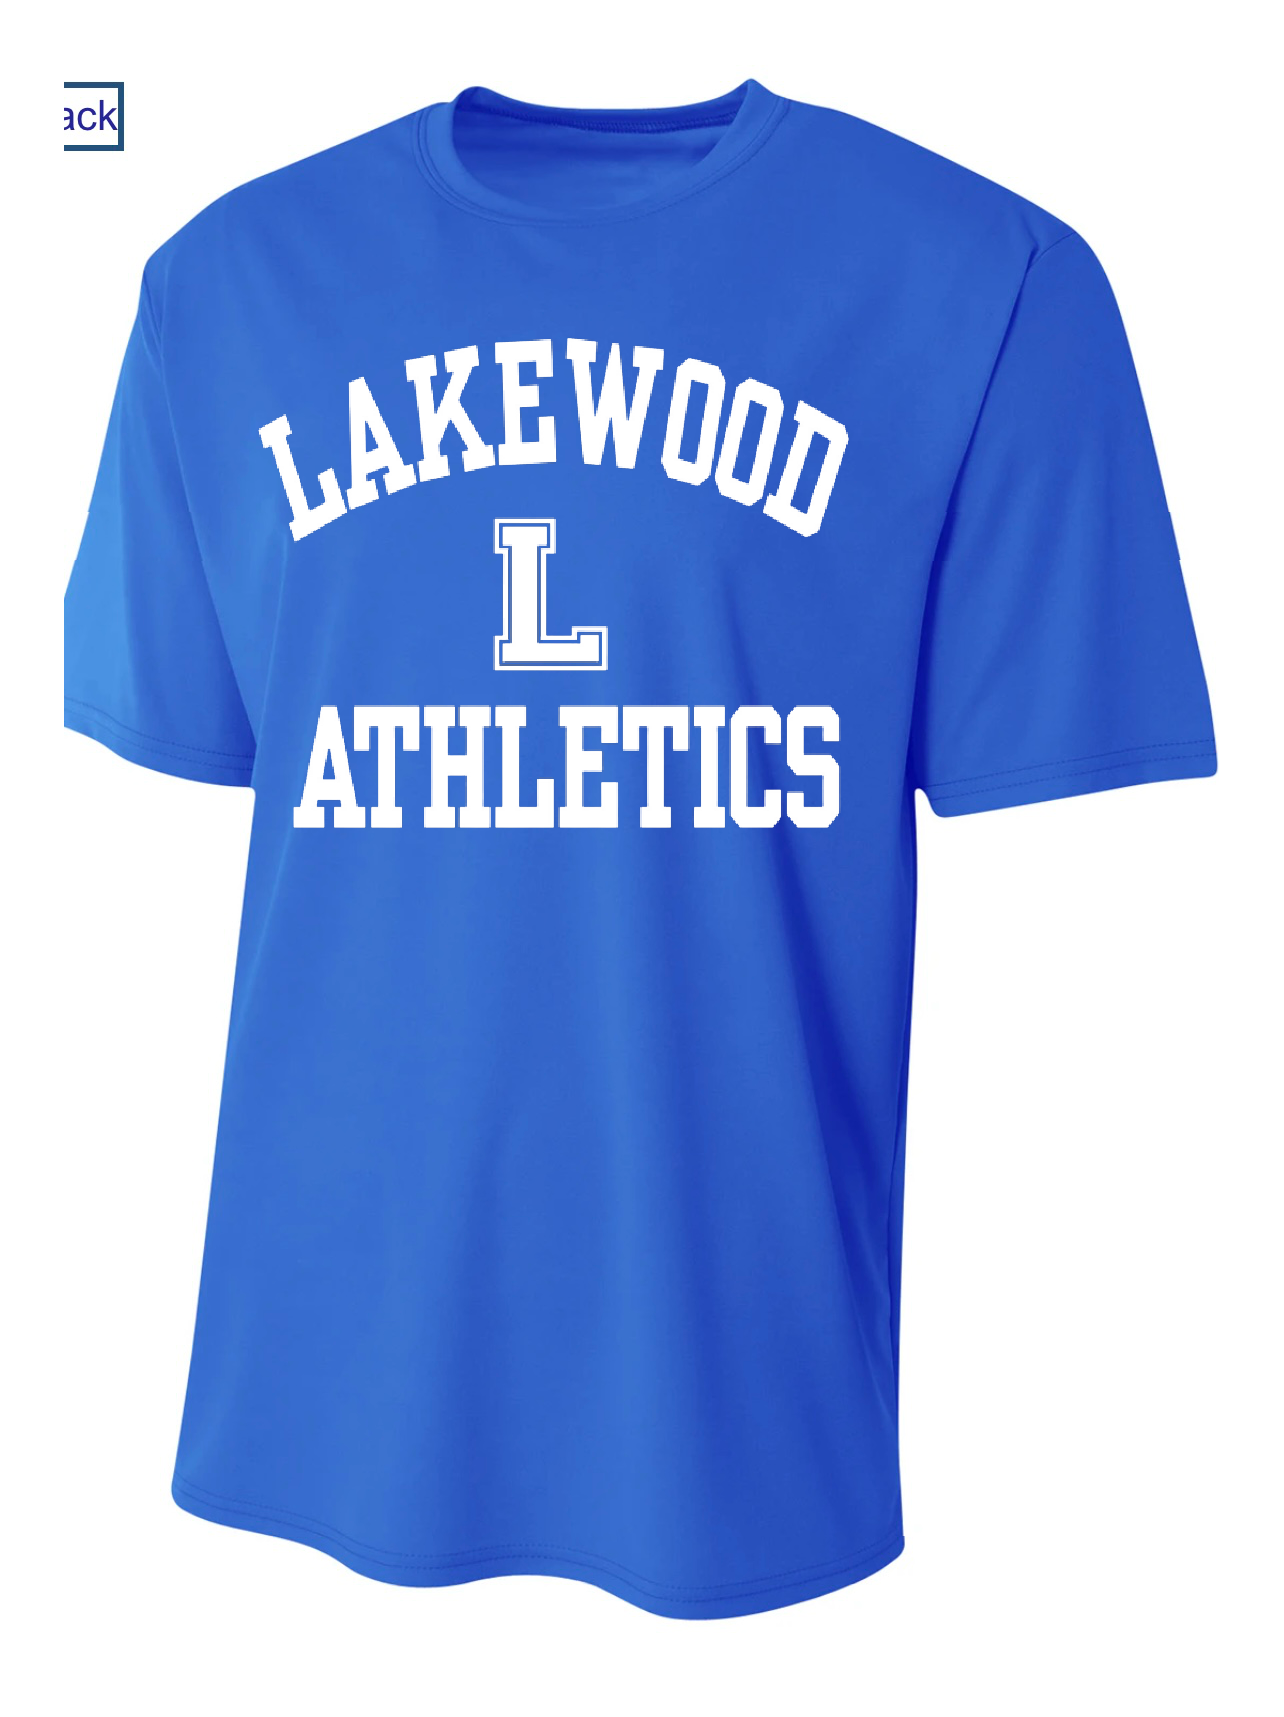 Lakewood Lancers Athletics or Custom Sport Dri-Fit Moisture-Wicking Tee